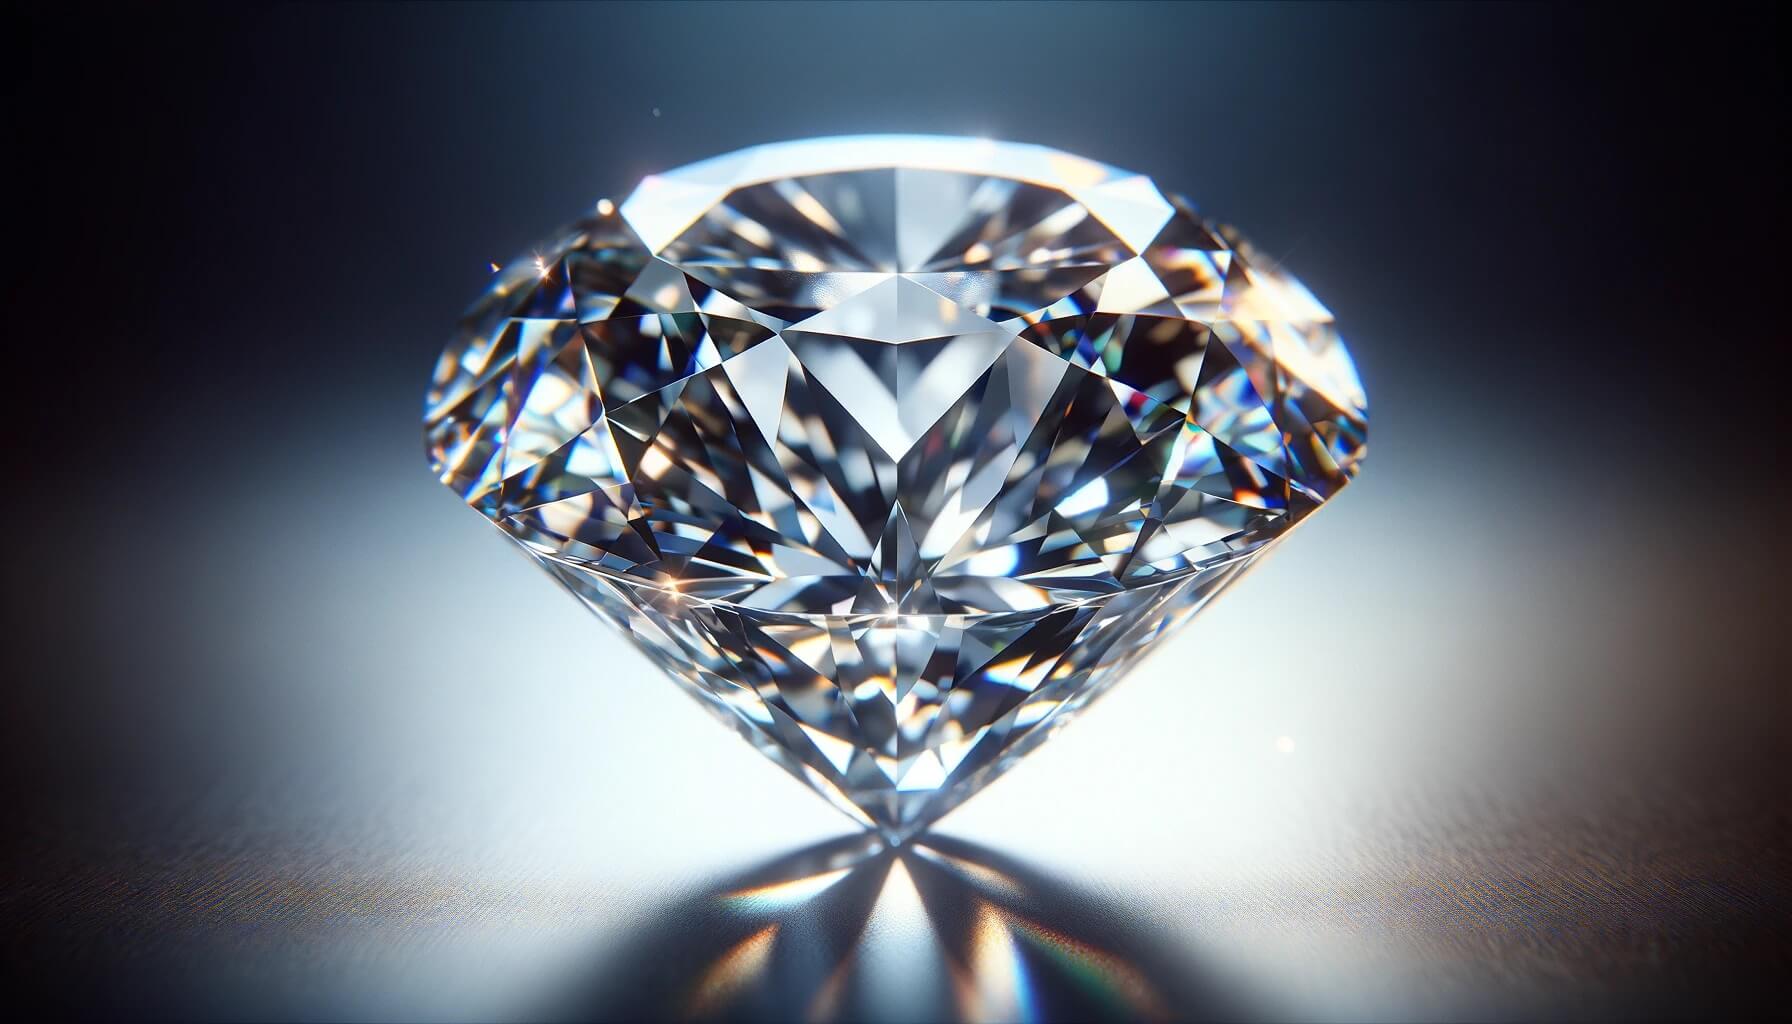 Ученые научились создавать искусственные алмазы за рекордные 150 минут. Красивый алмаз можно создать в лабораторных условиях всего за 2,5 часа. Фото.